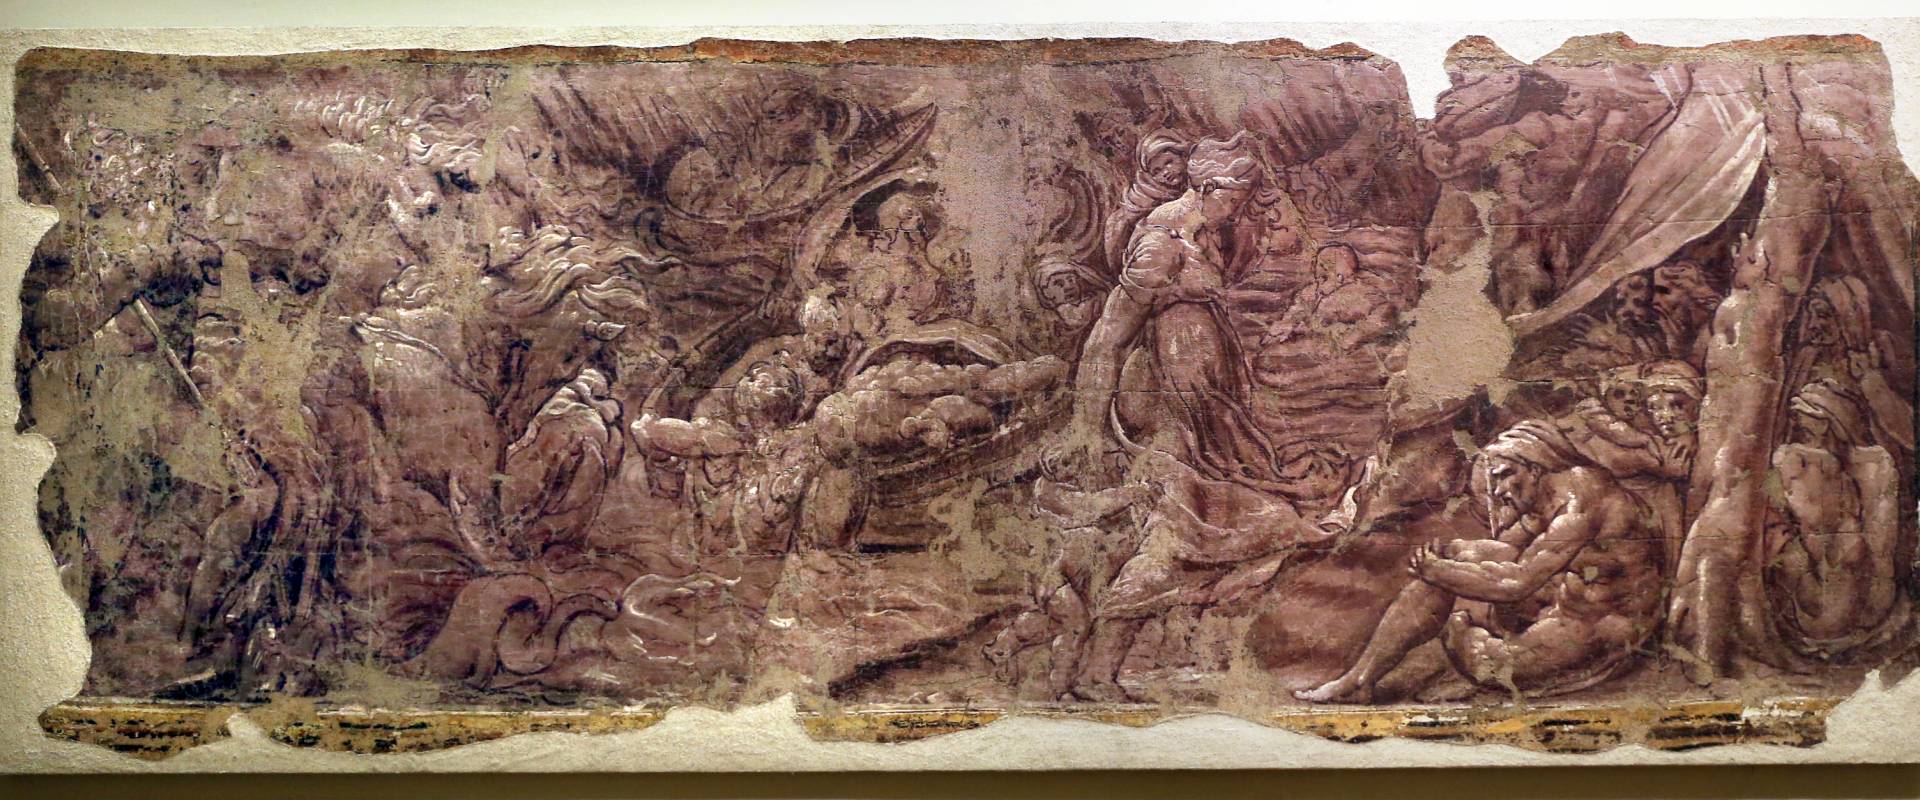 Leolio orsi, frammenti di affreschi dalla rocca di novellara, 1546 ca., scena di diluvio con deucalione e pirra 02 foto di Sailko